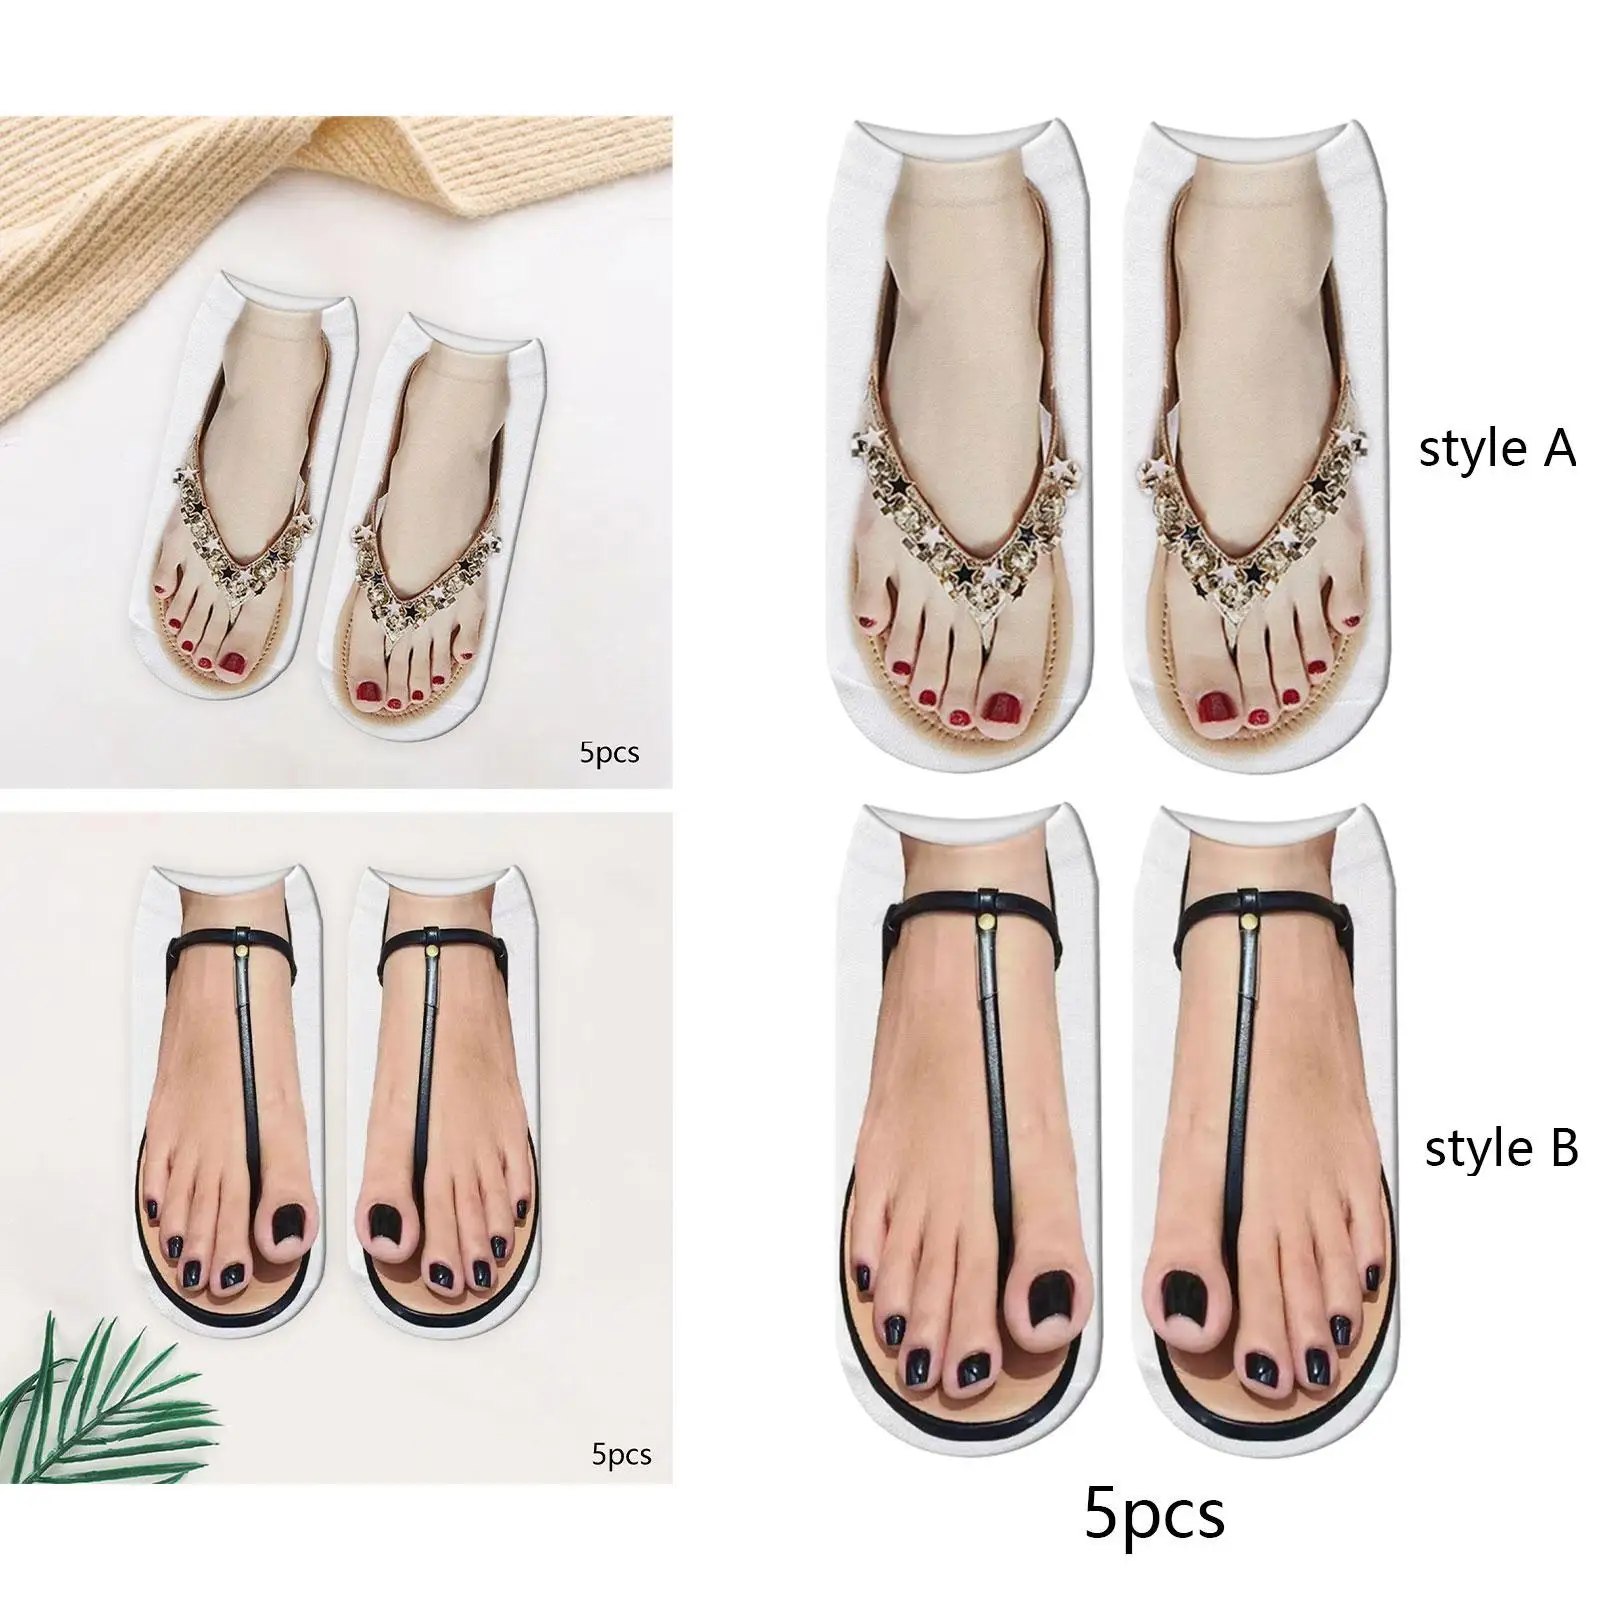 Manicure Print Socks Funny Stocking, Hidden 3D Pattern Socks, Low Ankle Socks for Running, Walking Christmas Gift